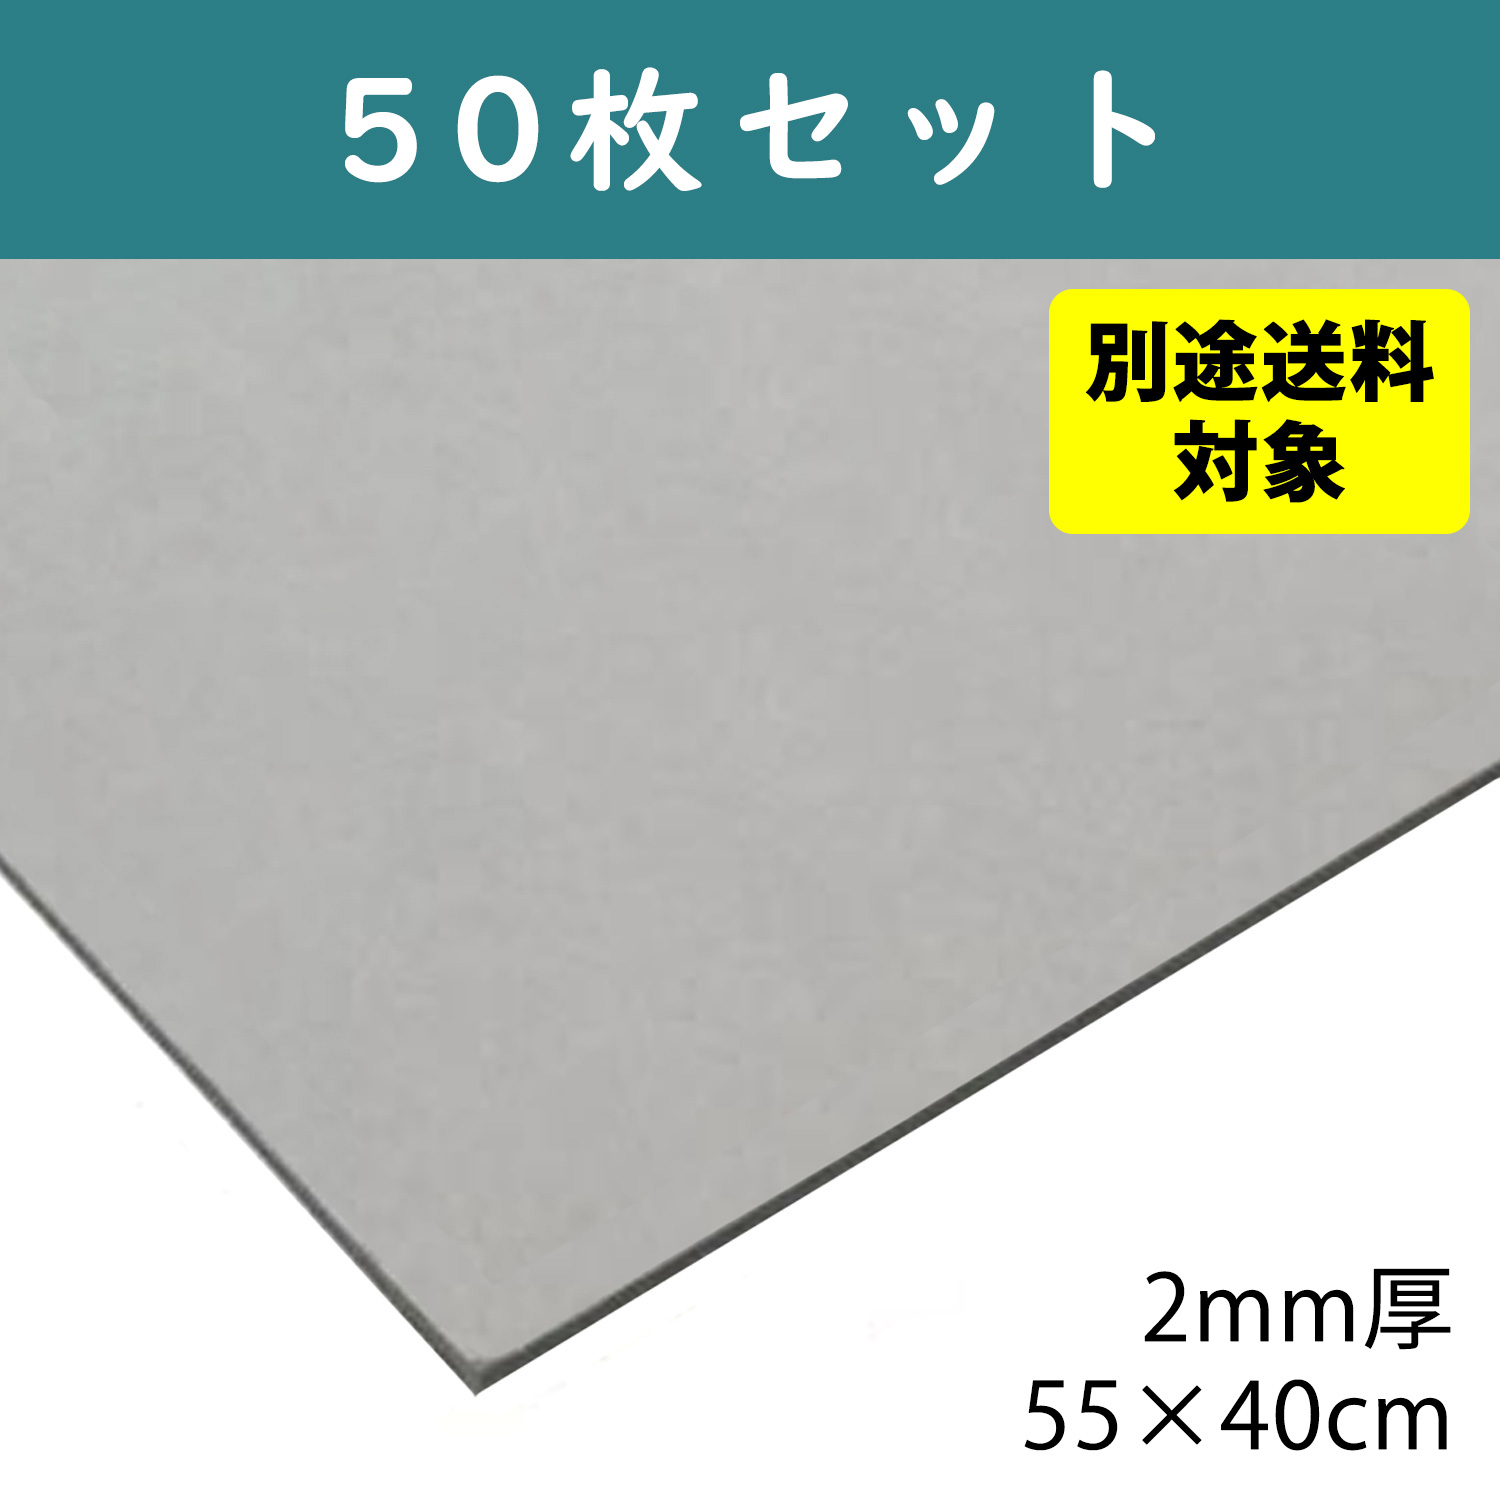 【+別途送料対象商品】CTN1-50 グレー厚紙 2mm厚 55×40cm 50枚入 (袋)